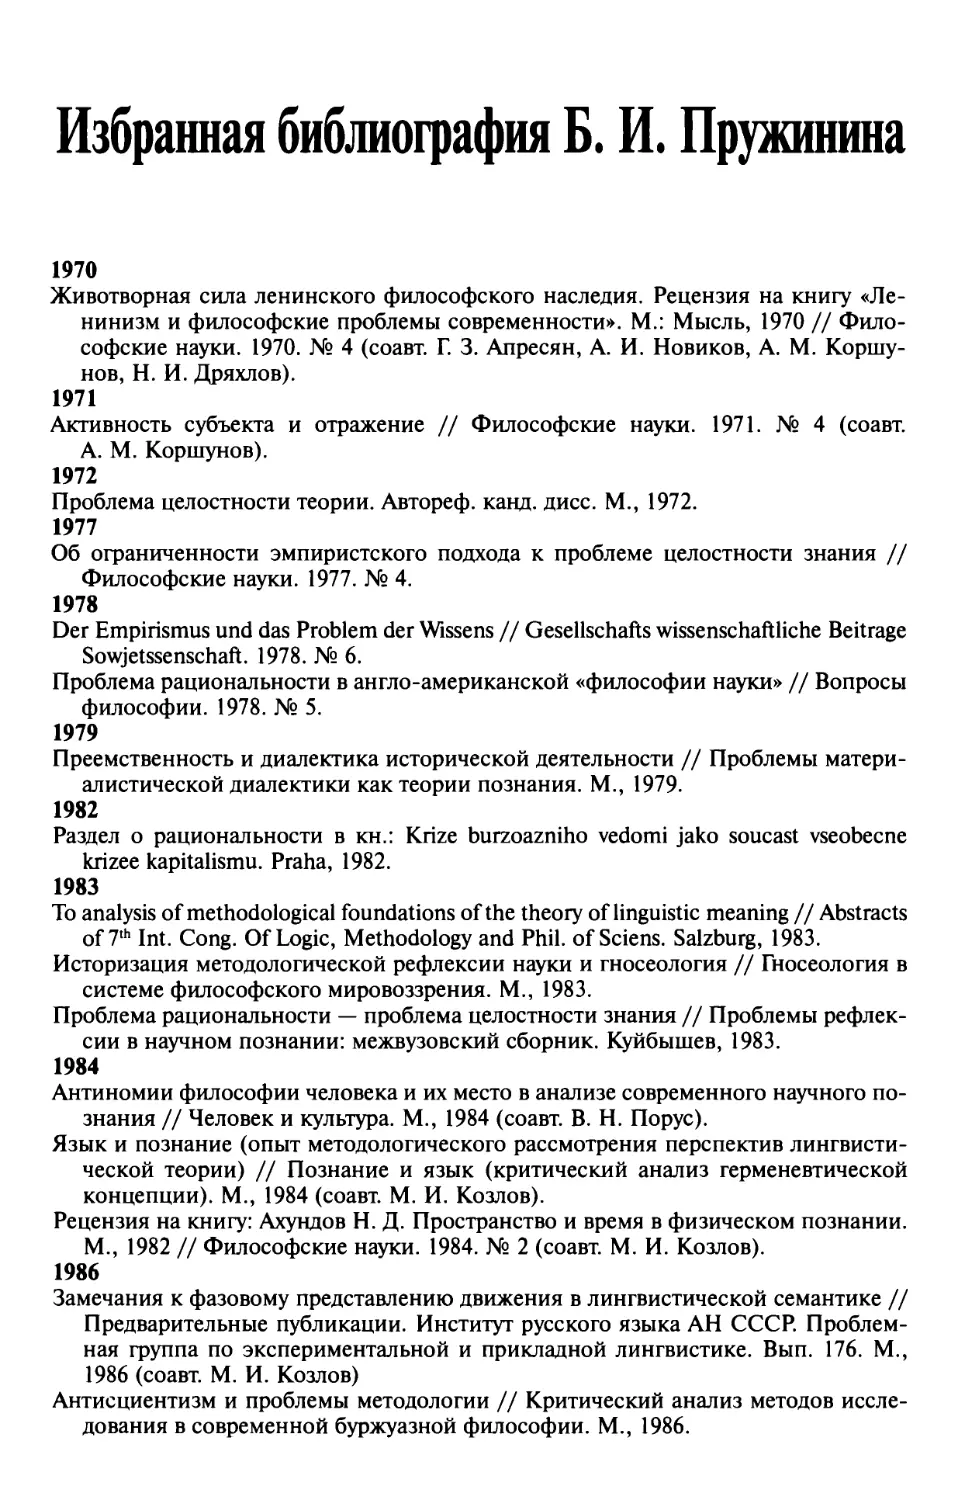 Избранная библиография Б.И. Пружинина